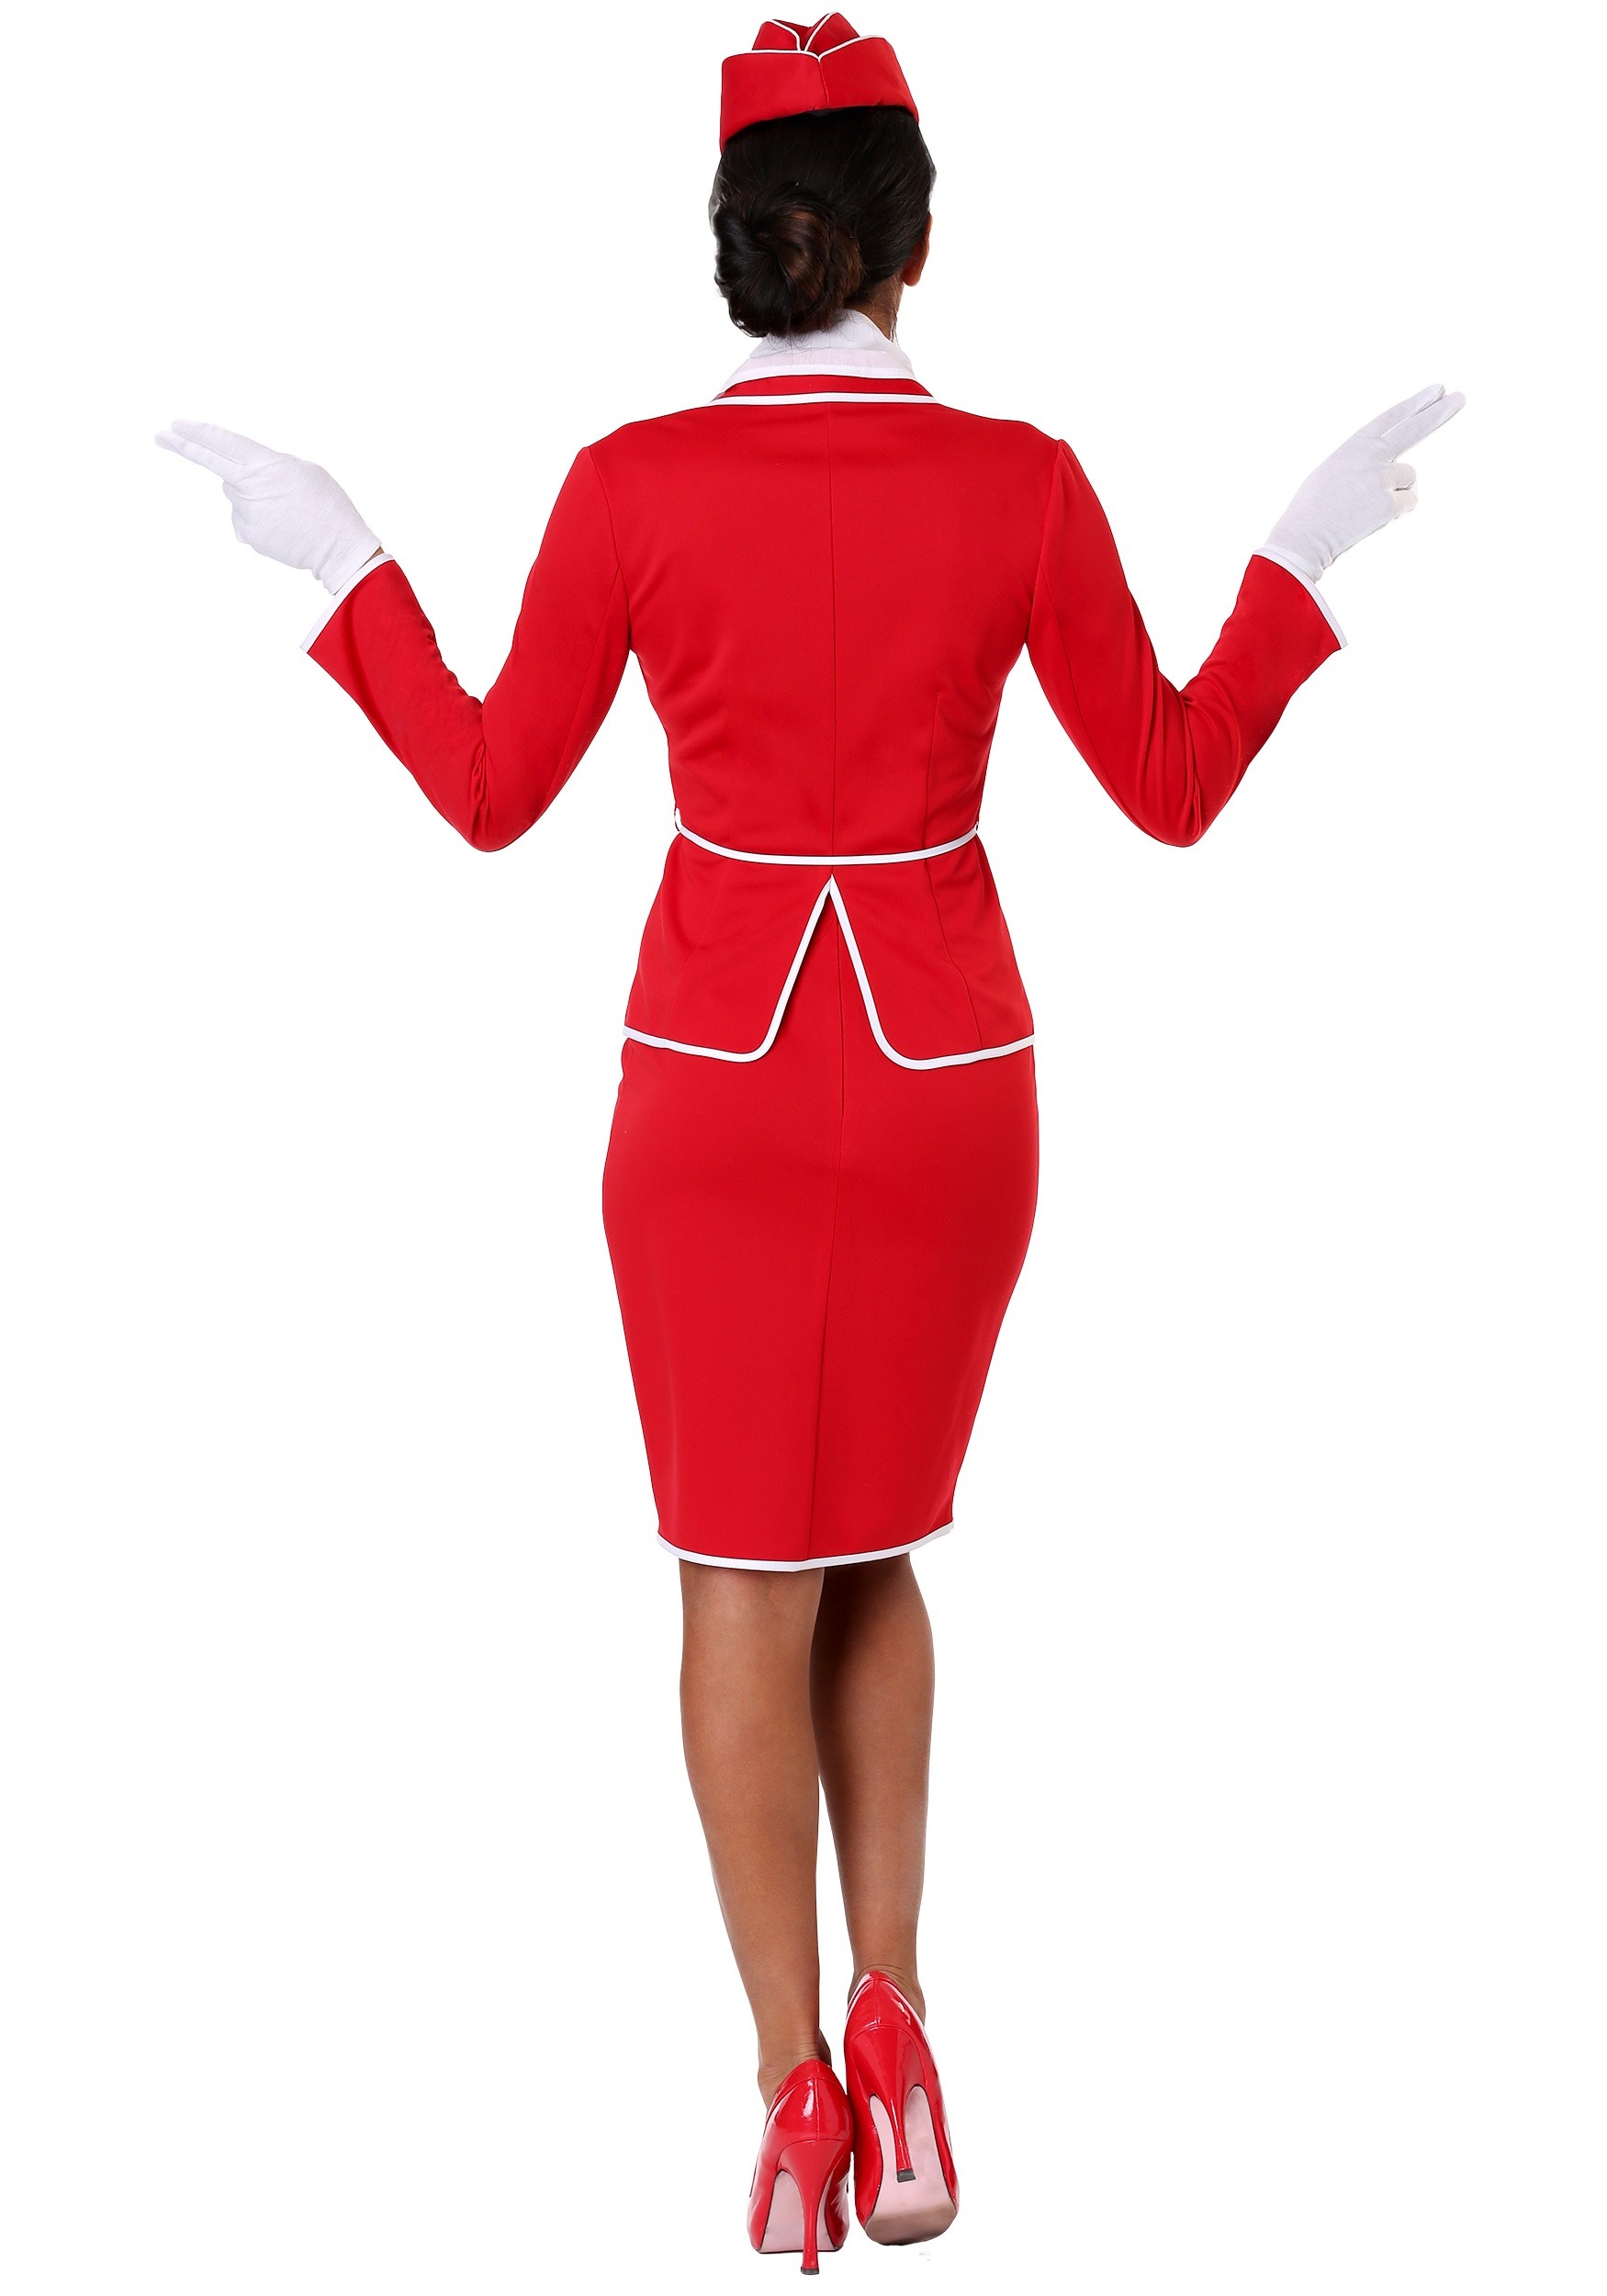 First Class Flight Attendant Costume For Women